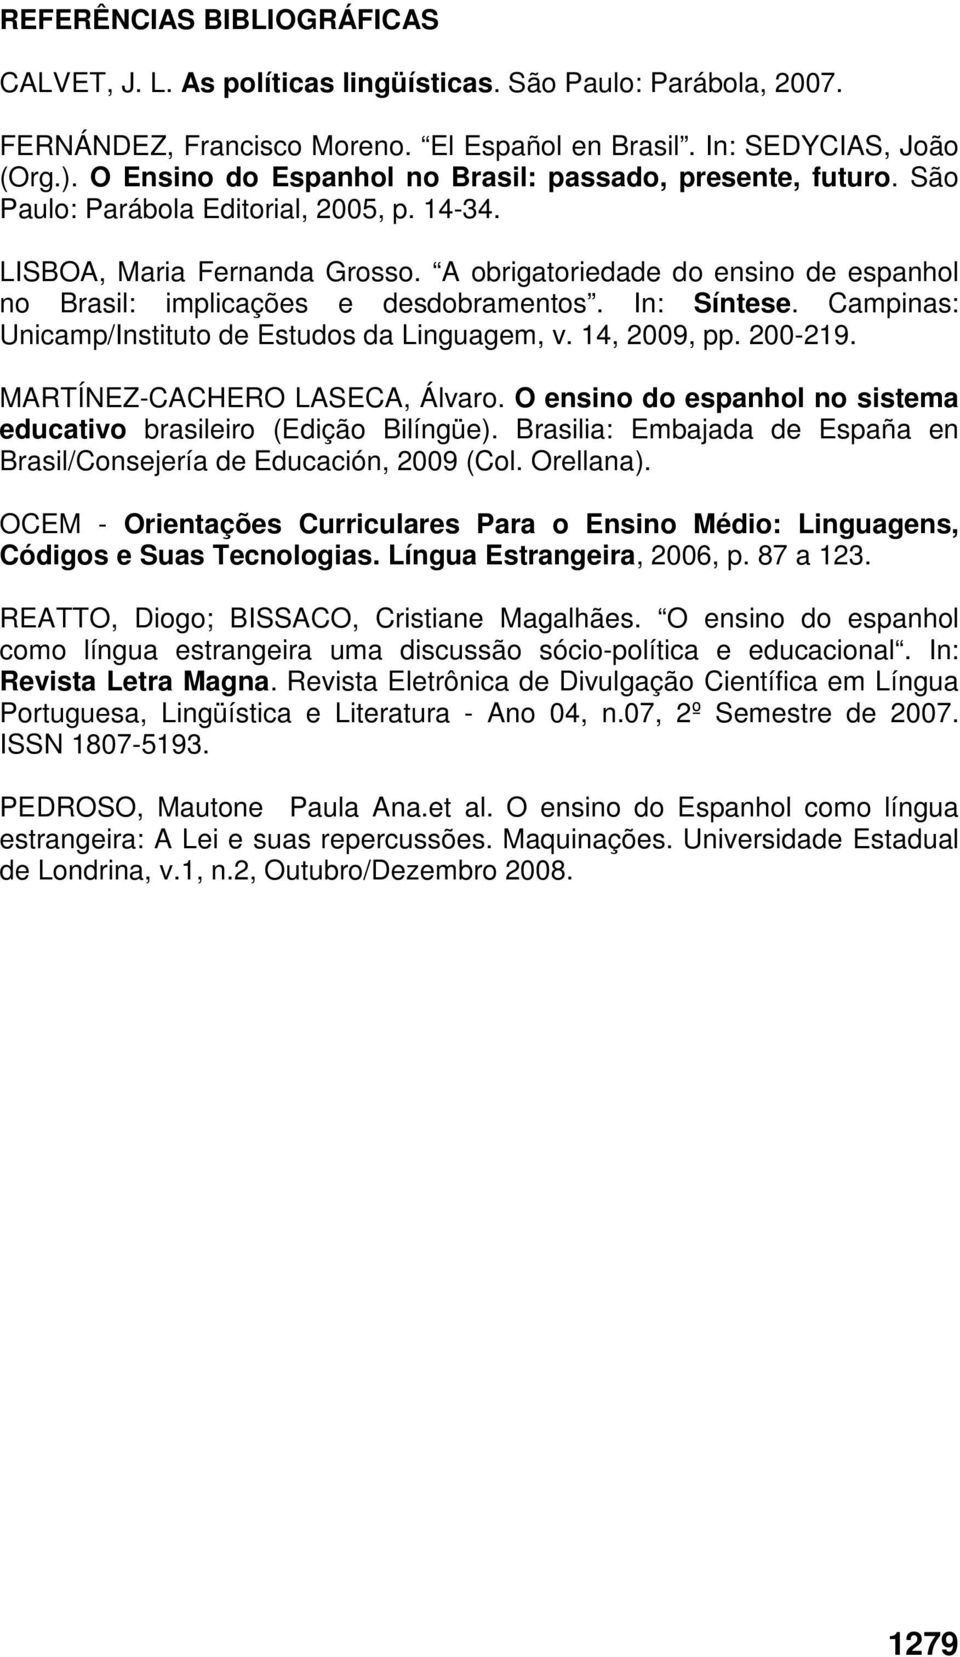 A obrigatoriedade do ensino de espanhol no Brasil: implicações e desdobramentos. In: Síntese. Campinas: Unicamp/Instituto de Estudos da Linguagem, v. 14, 2009, pp. 200-219.